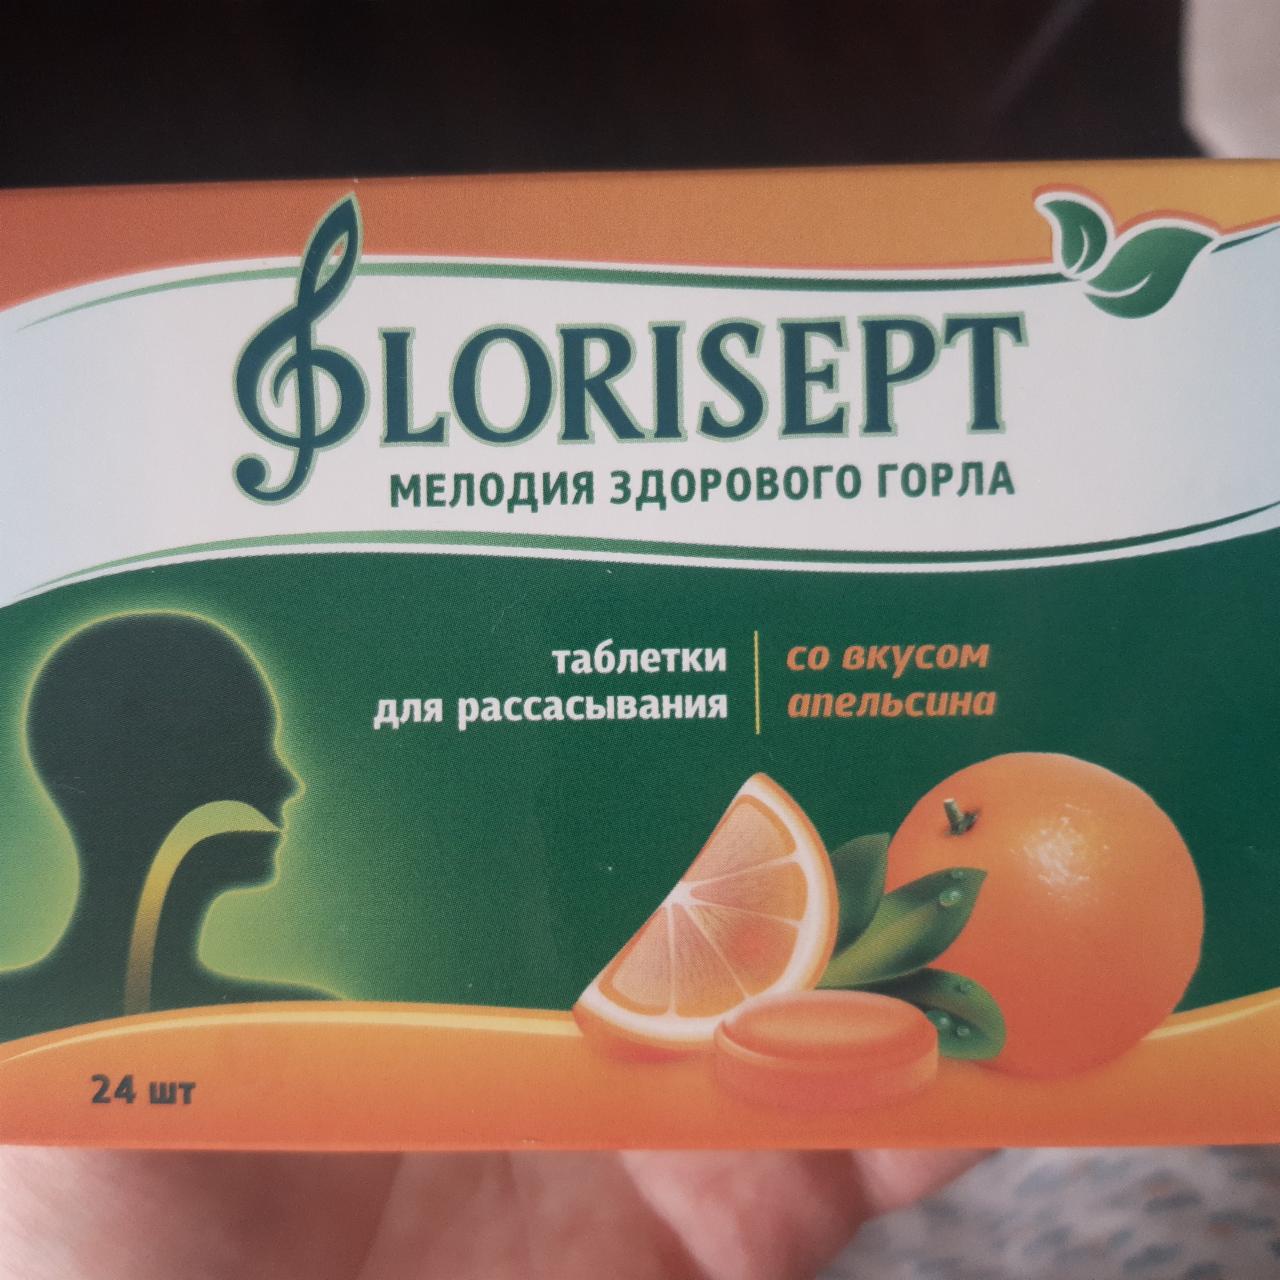 Фото - таблетки для рассасывания со вкусом апельсина Florisept